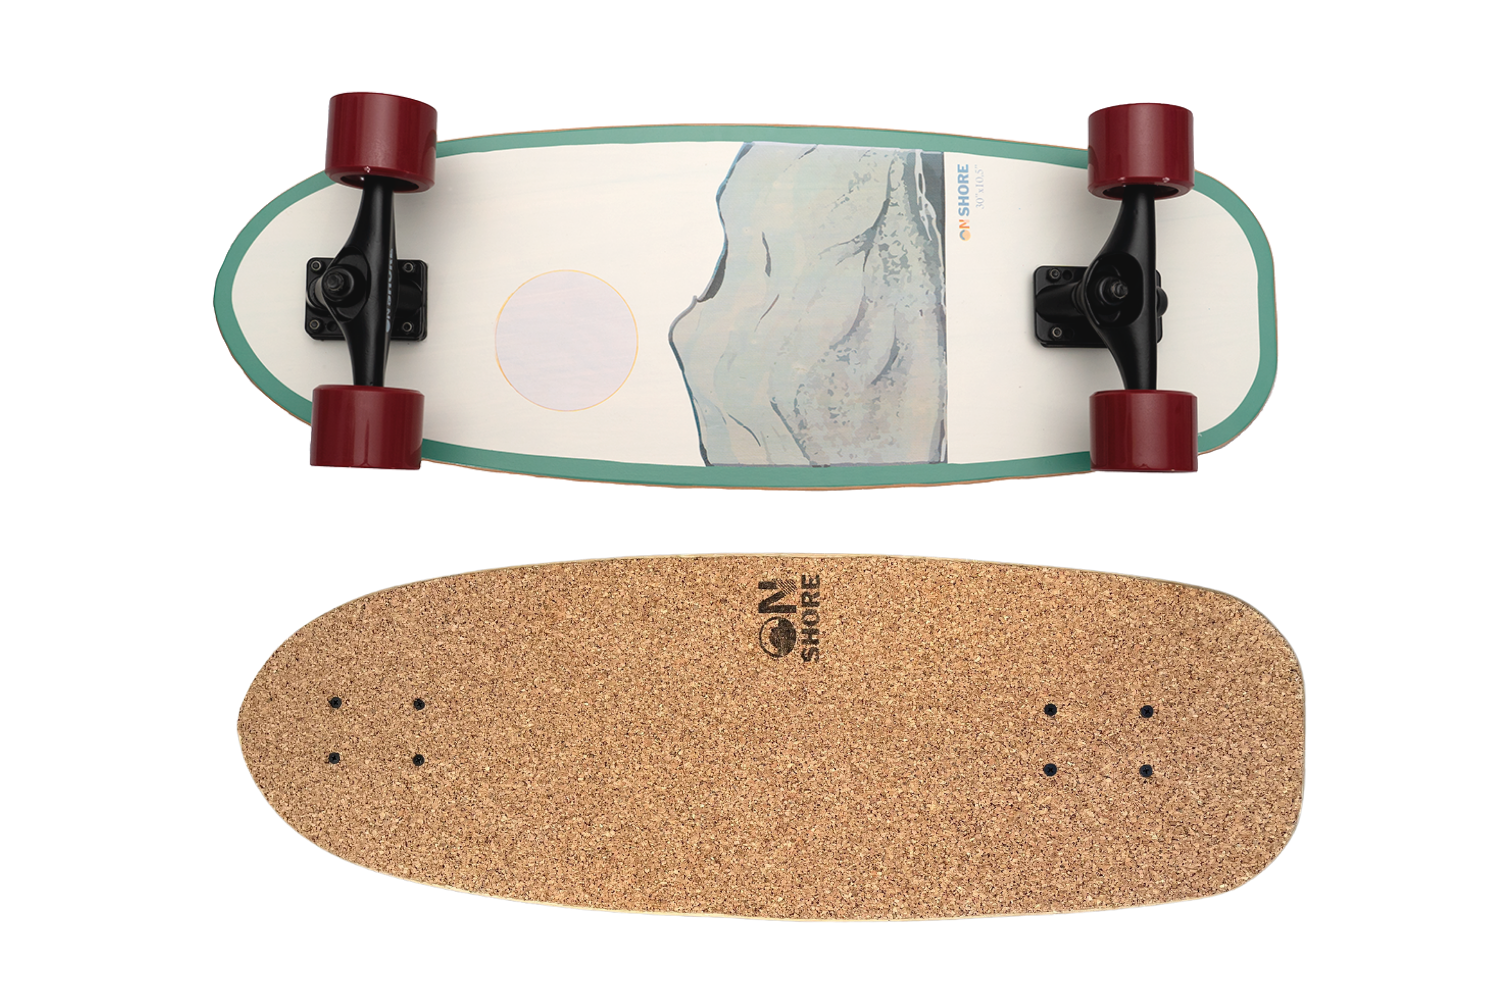 Limited edition Surfskate Skeleton Bay model